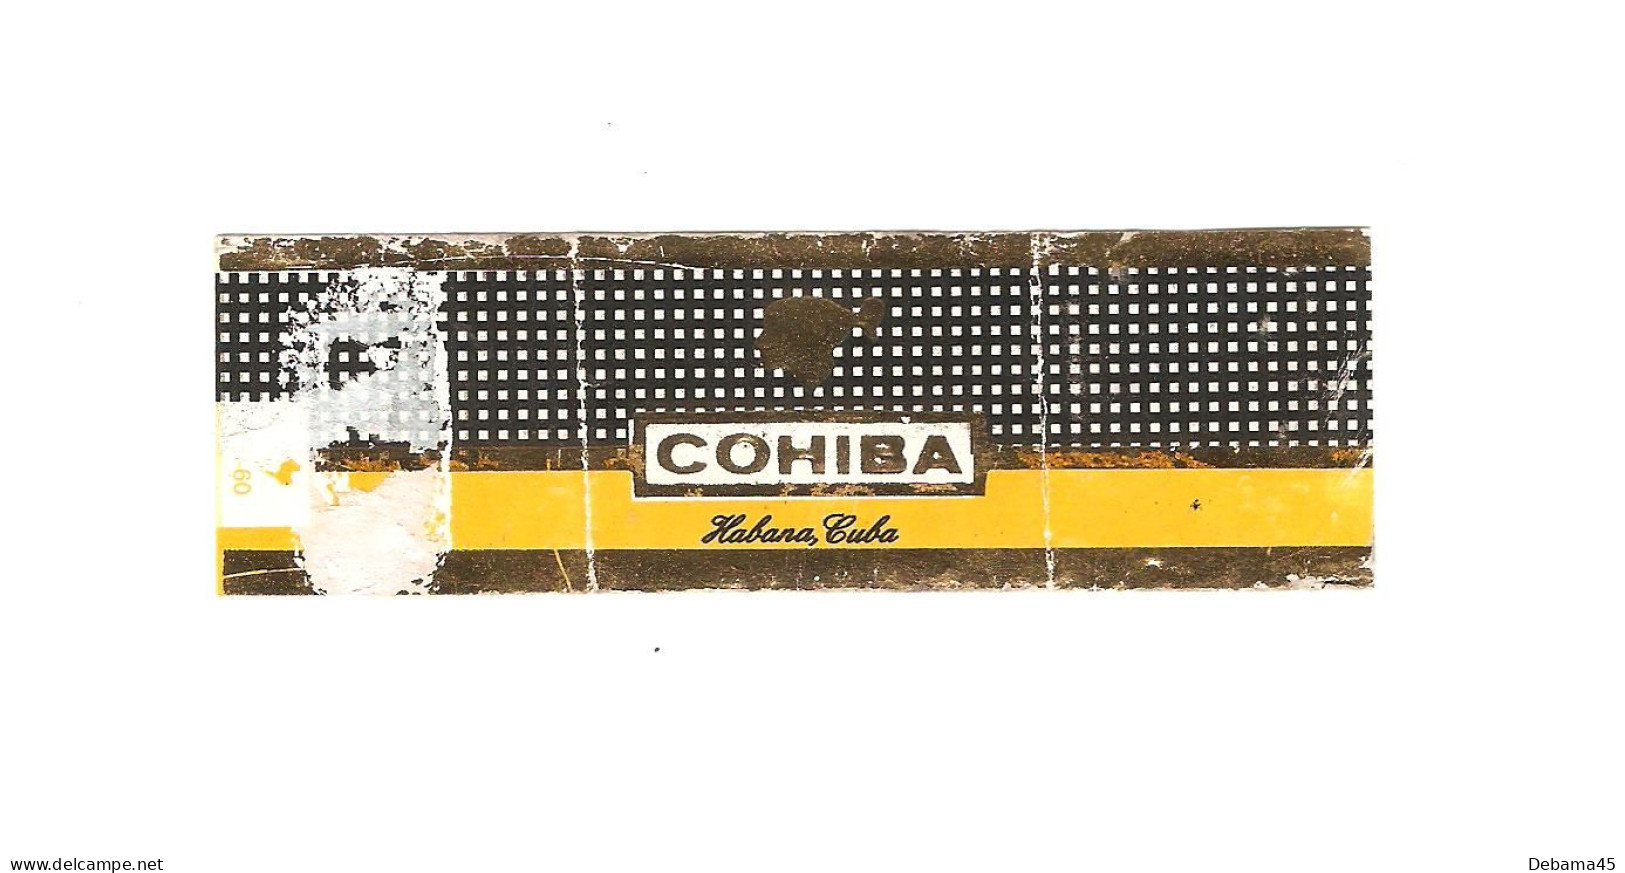 620/ Bague De Cigare : CUBA : Cohiba : Habana Cuba - Bagues De Cigares